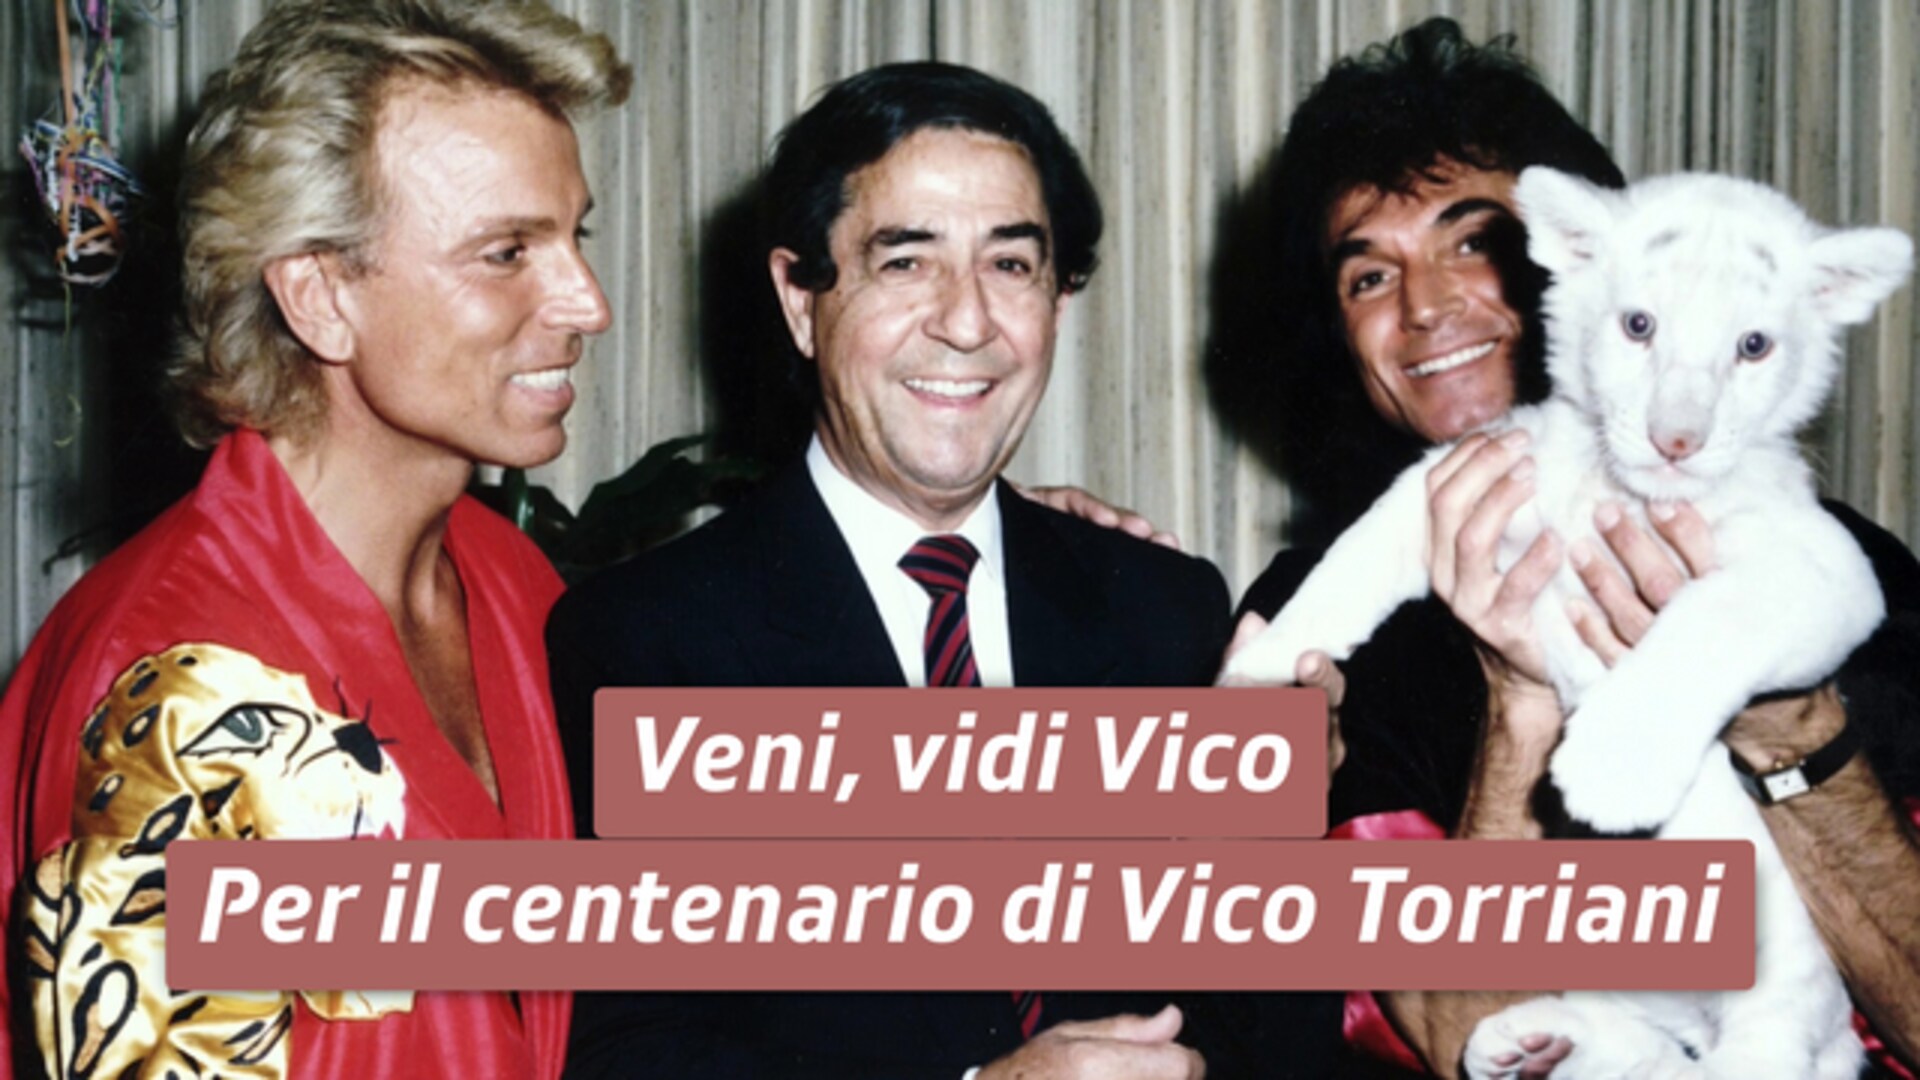 Veni, vidi Vico - Per il centenario di Vico Torriani